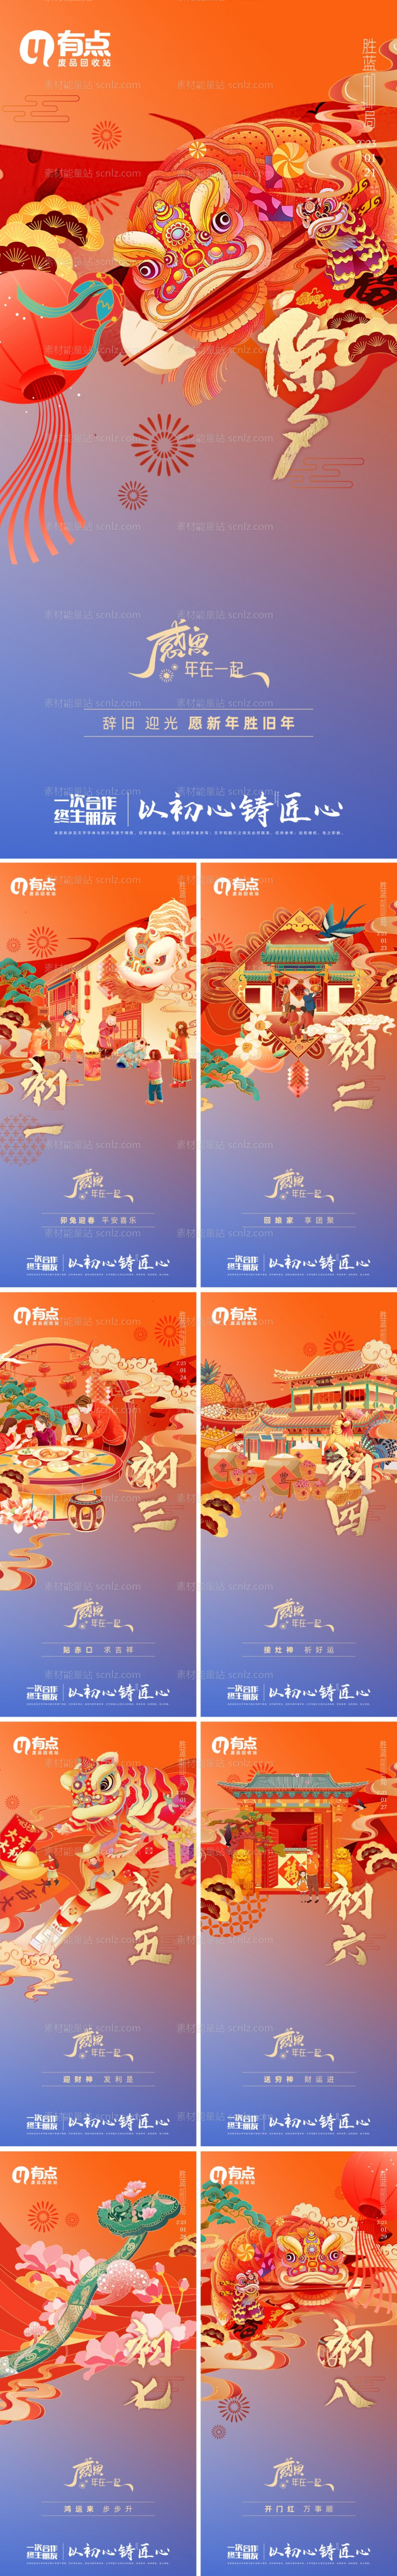 素材能量站-春节年俗国潮返乡系列海报